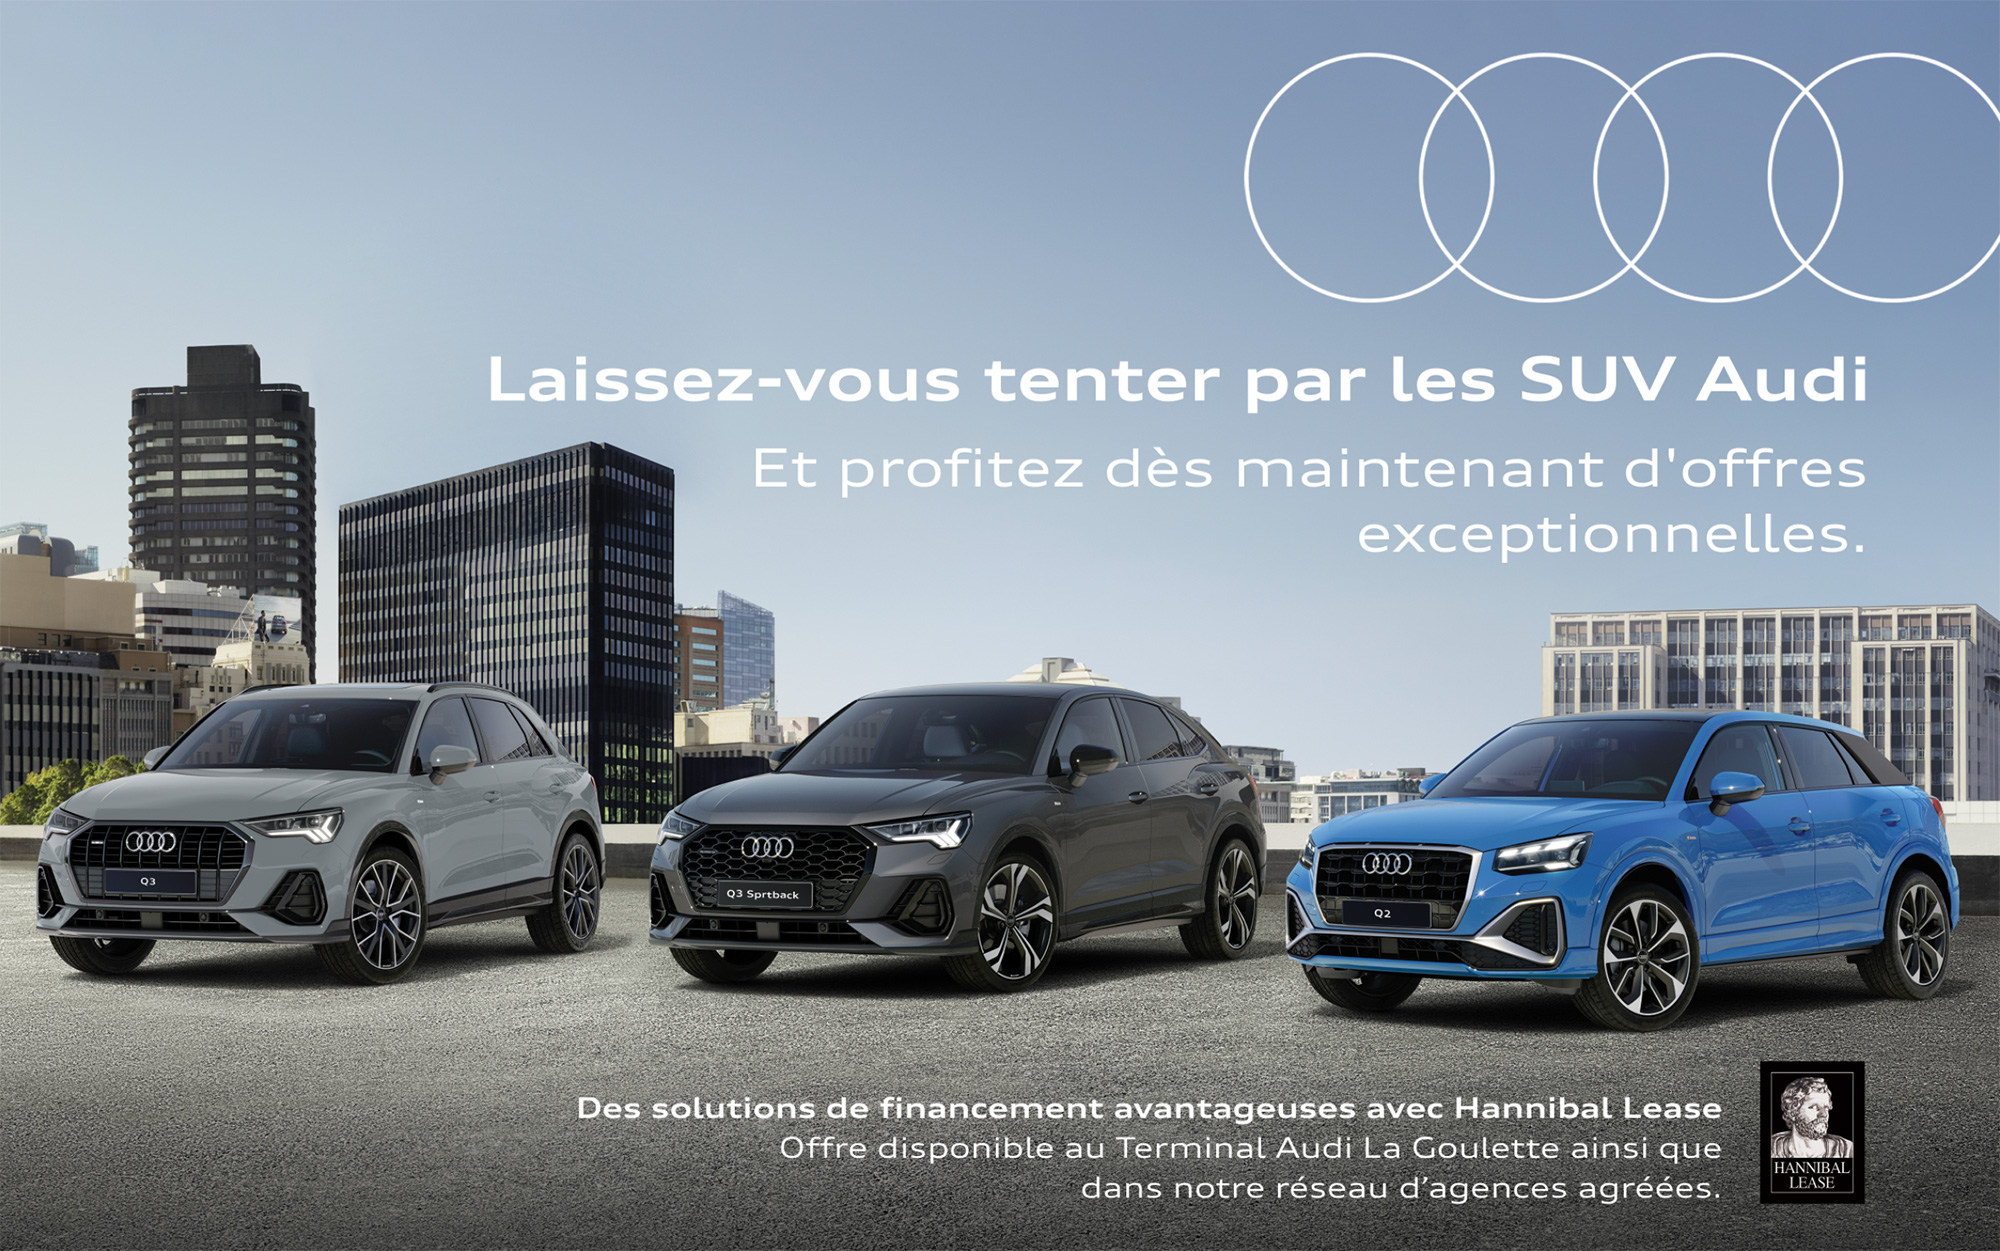 Gamme SUV Audi Tunisie, des packs promotionnels en partenariat avec Hannibal Lease